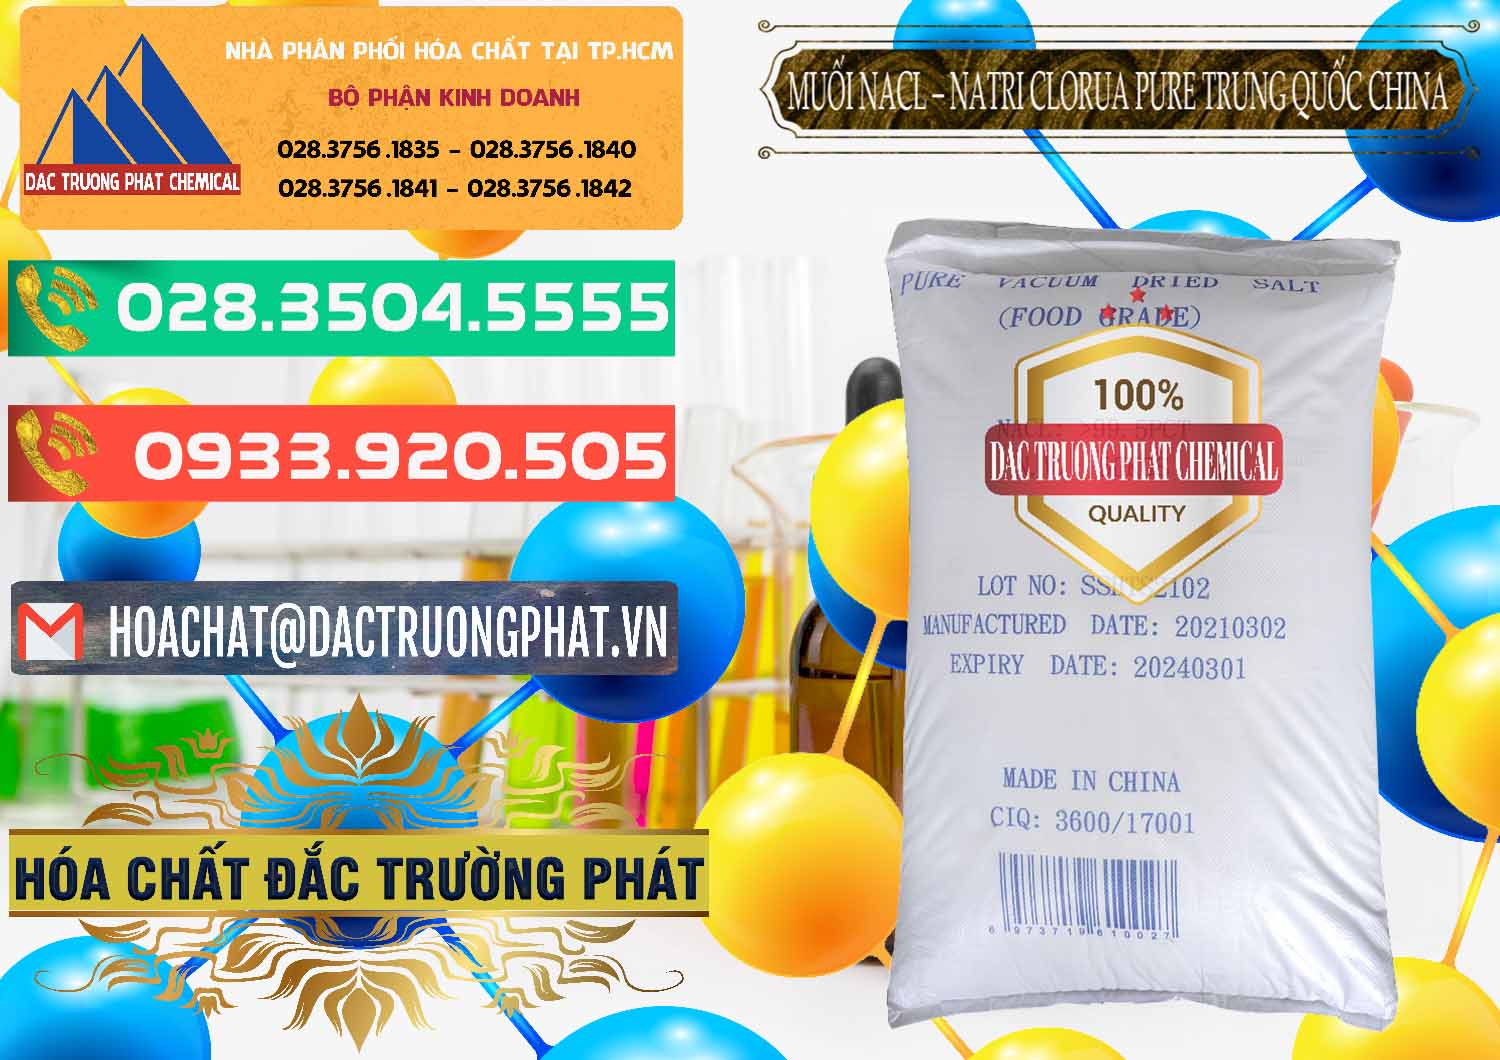 Bán và phân phối Muối NaCL – Sodium Chloride Pure Trung Quốc China - 0230 - Nhà nhập khẩu ( phân phối ) hóa chất tại TP.HCM - congtyhoachat.com.vn